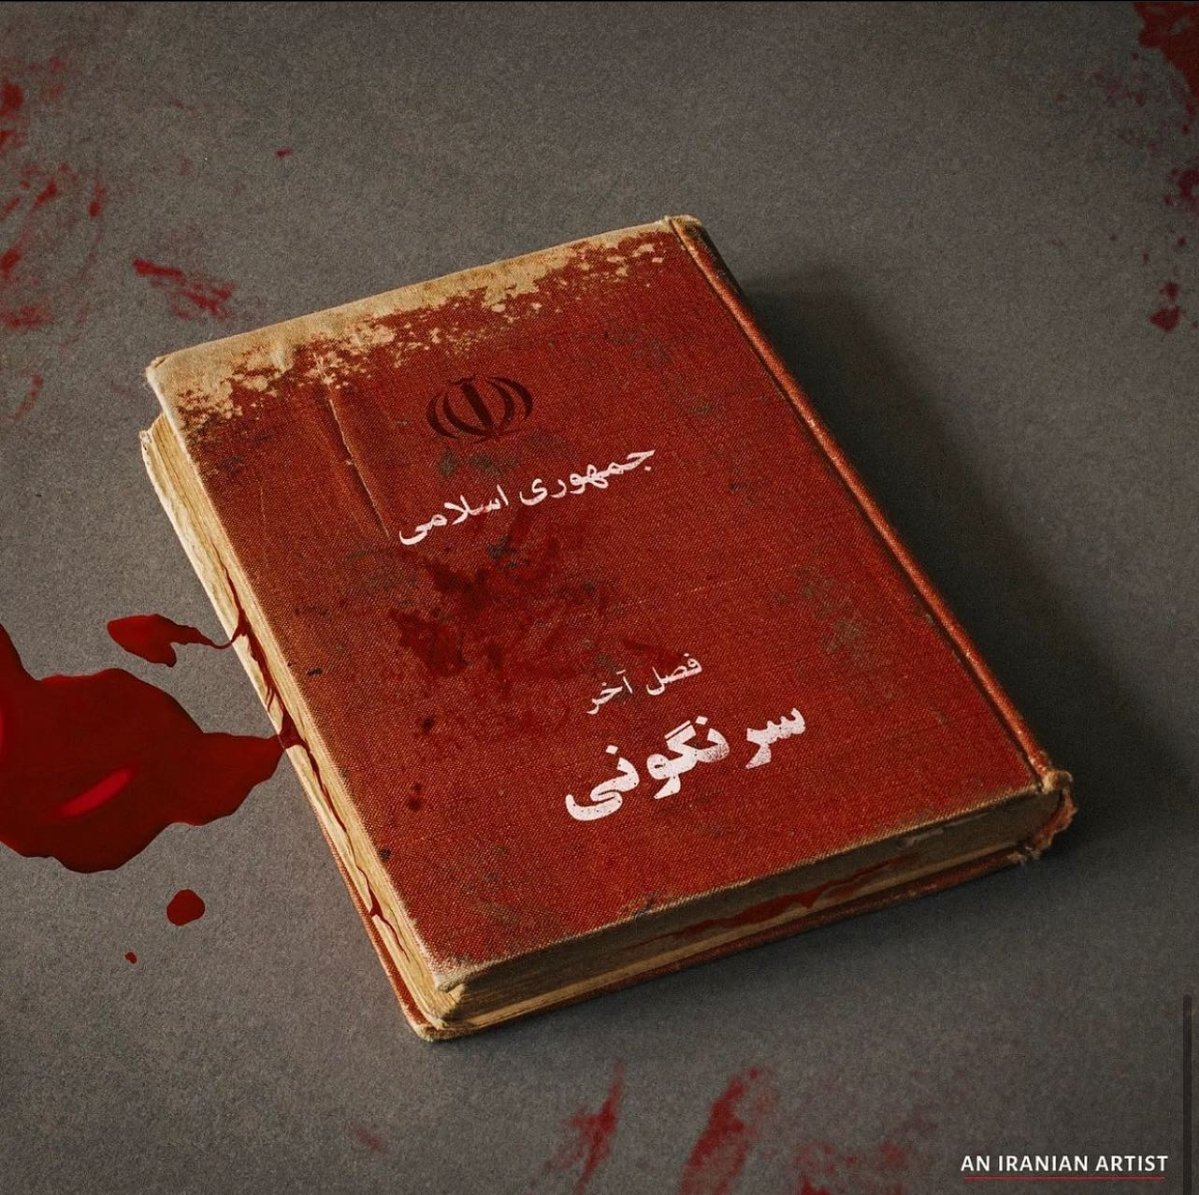 Iran Revolution Art No. FgFE1nsUAAUcMoL